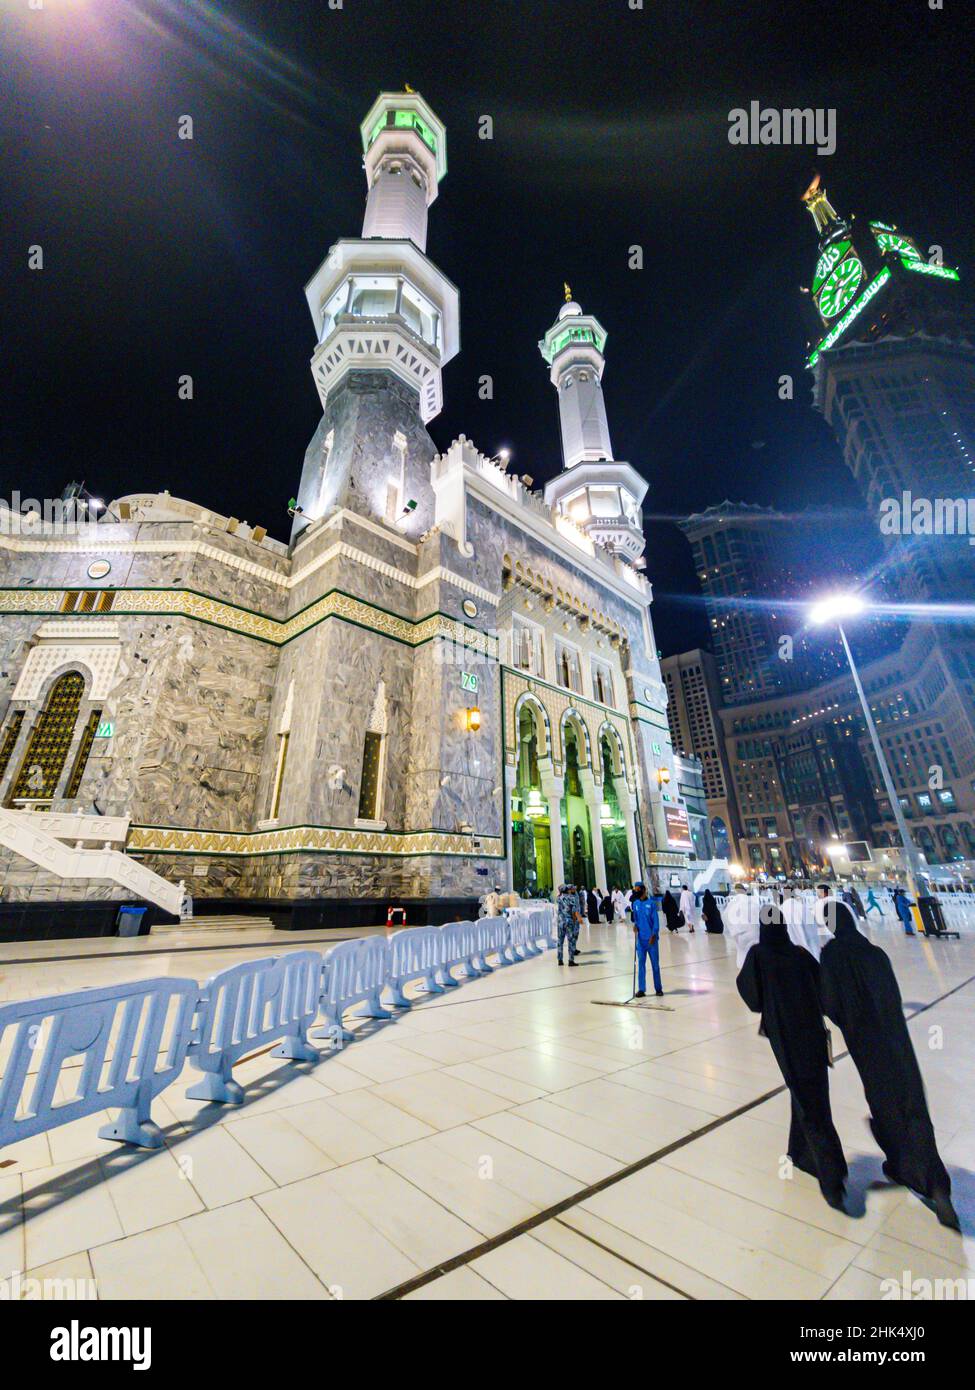 Mekka (la Mecque), Royaume d'Arabie saoudite, Moyen-Orient Banque D'Images